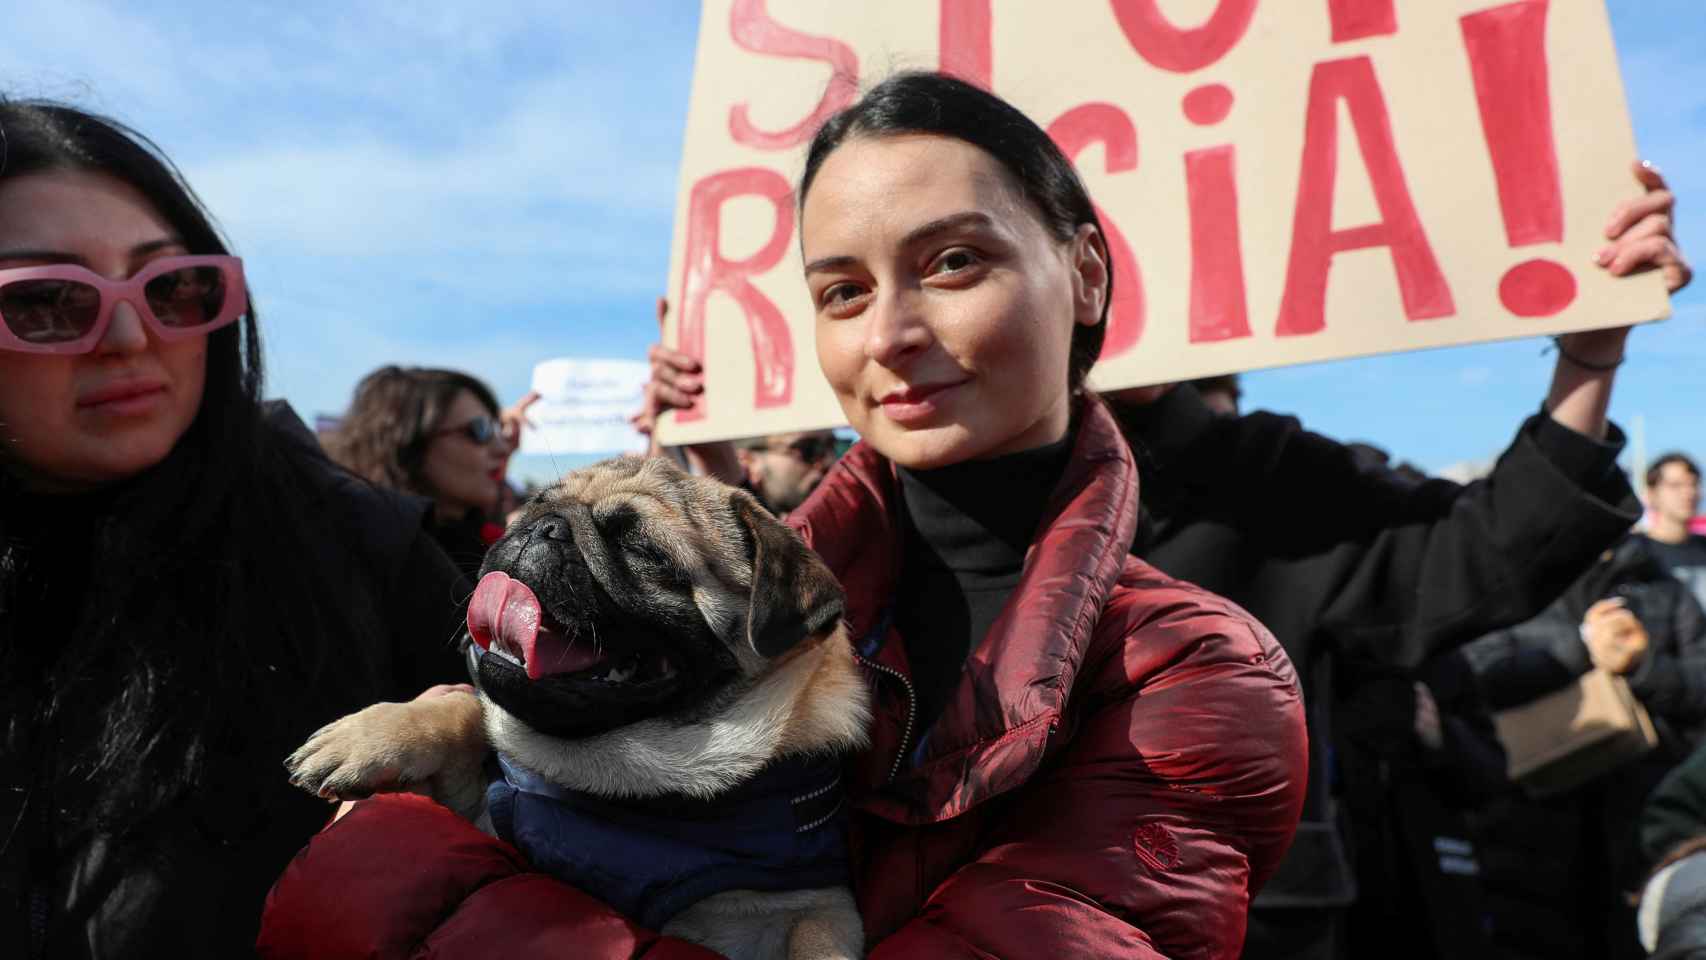 Una manifestante georgiana delante de un cartel con el mensaje 'Stop Russia' (Parad a Rusia)